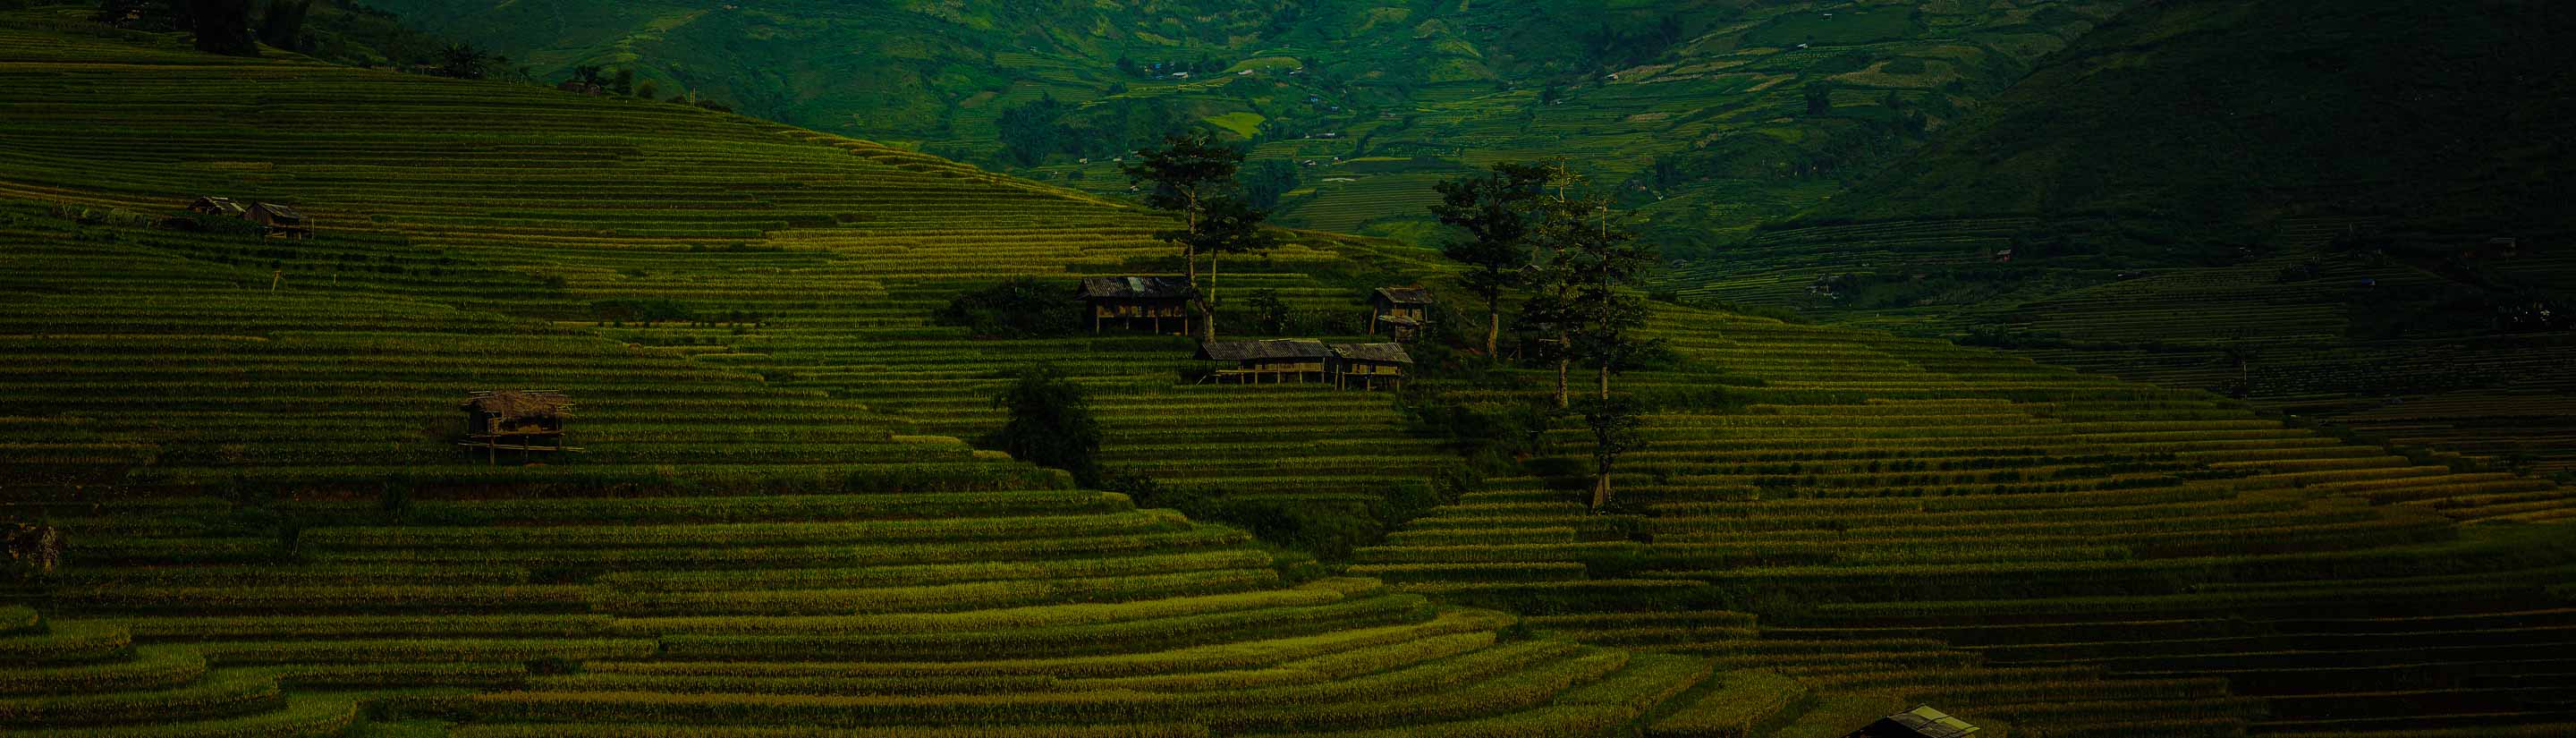 Terrassen mit Reisfeldern an grünen Bergen in China.